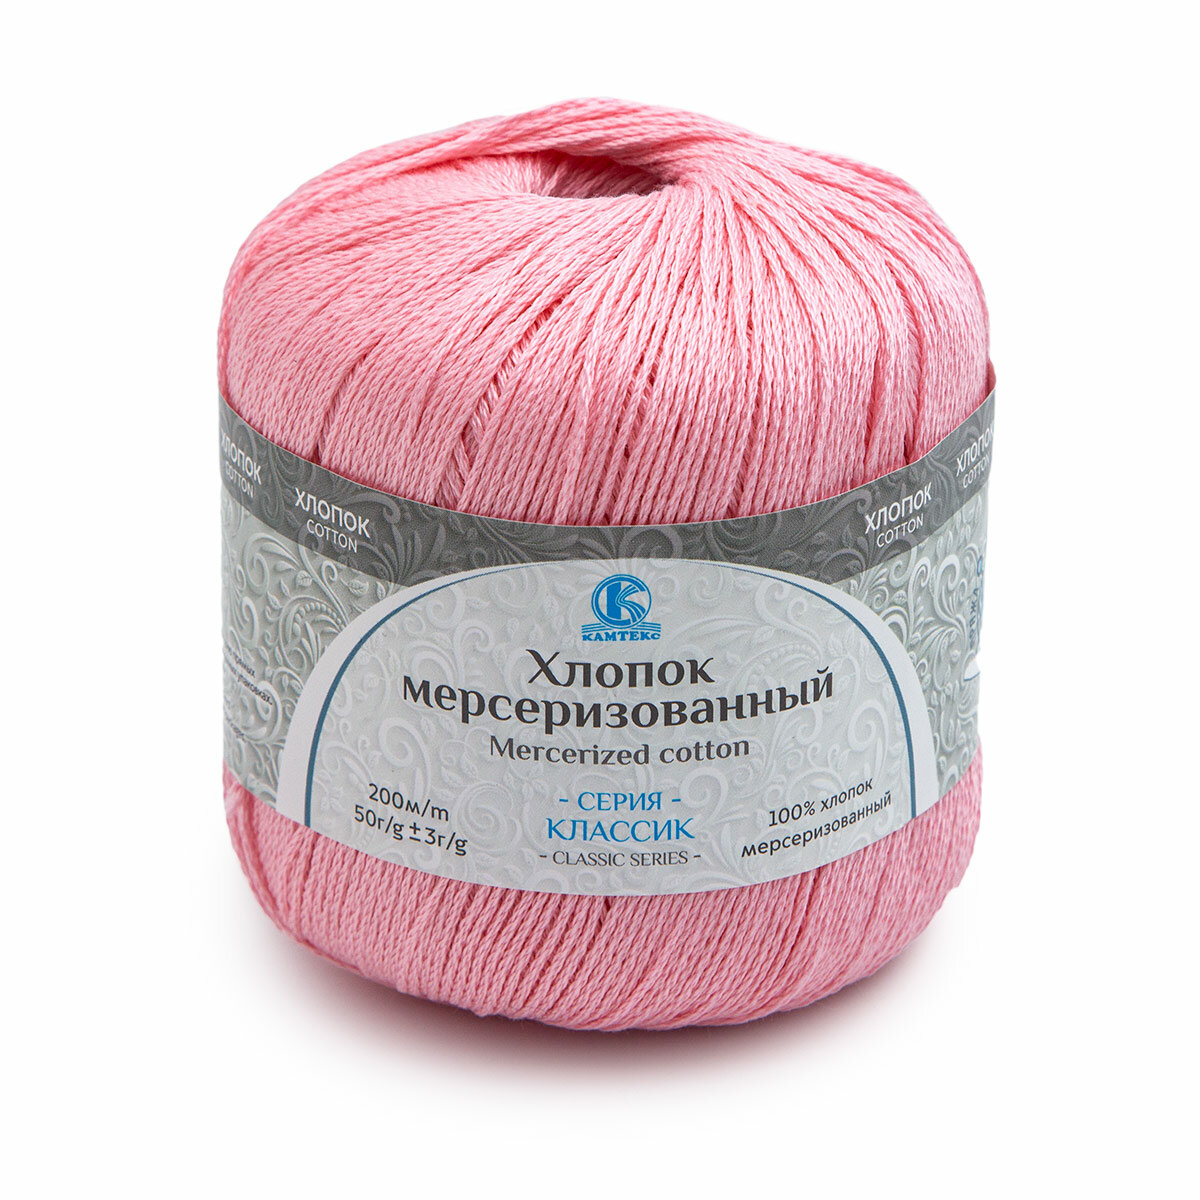 Пряжа для вязания Камтекс 'Хлопок мерсеризованный', 50г, 200м (100% хлопок) (056 розовый), 10 мотков